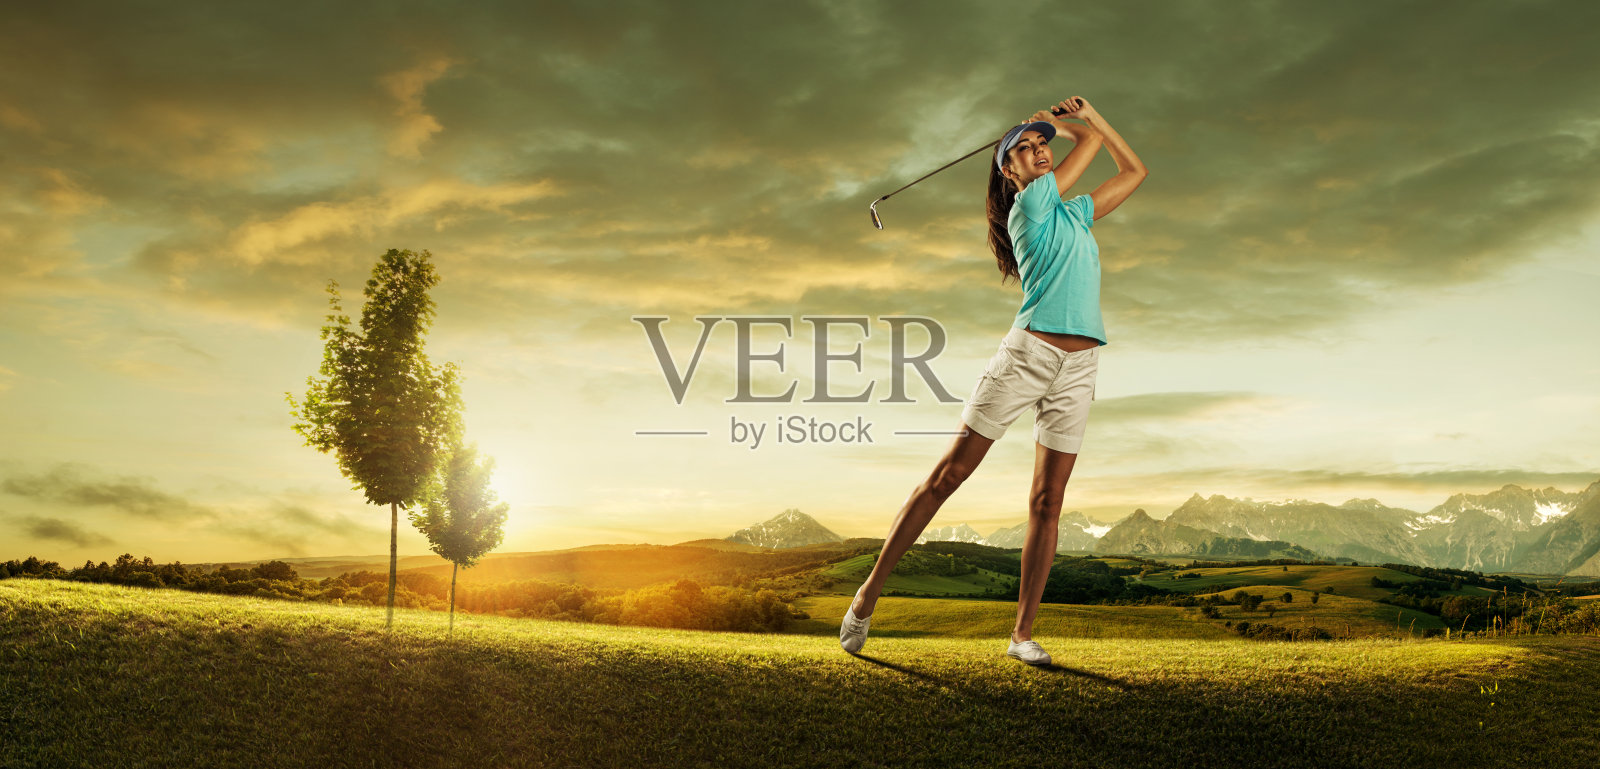 女子高尔夫球手击球的背景风景美丽照片摄影图片